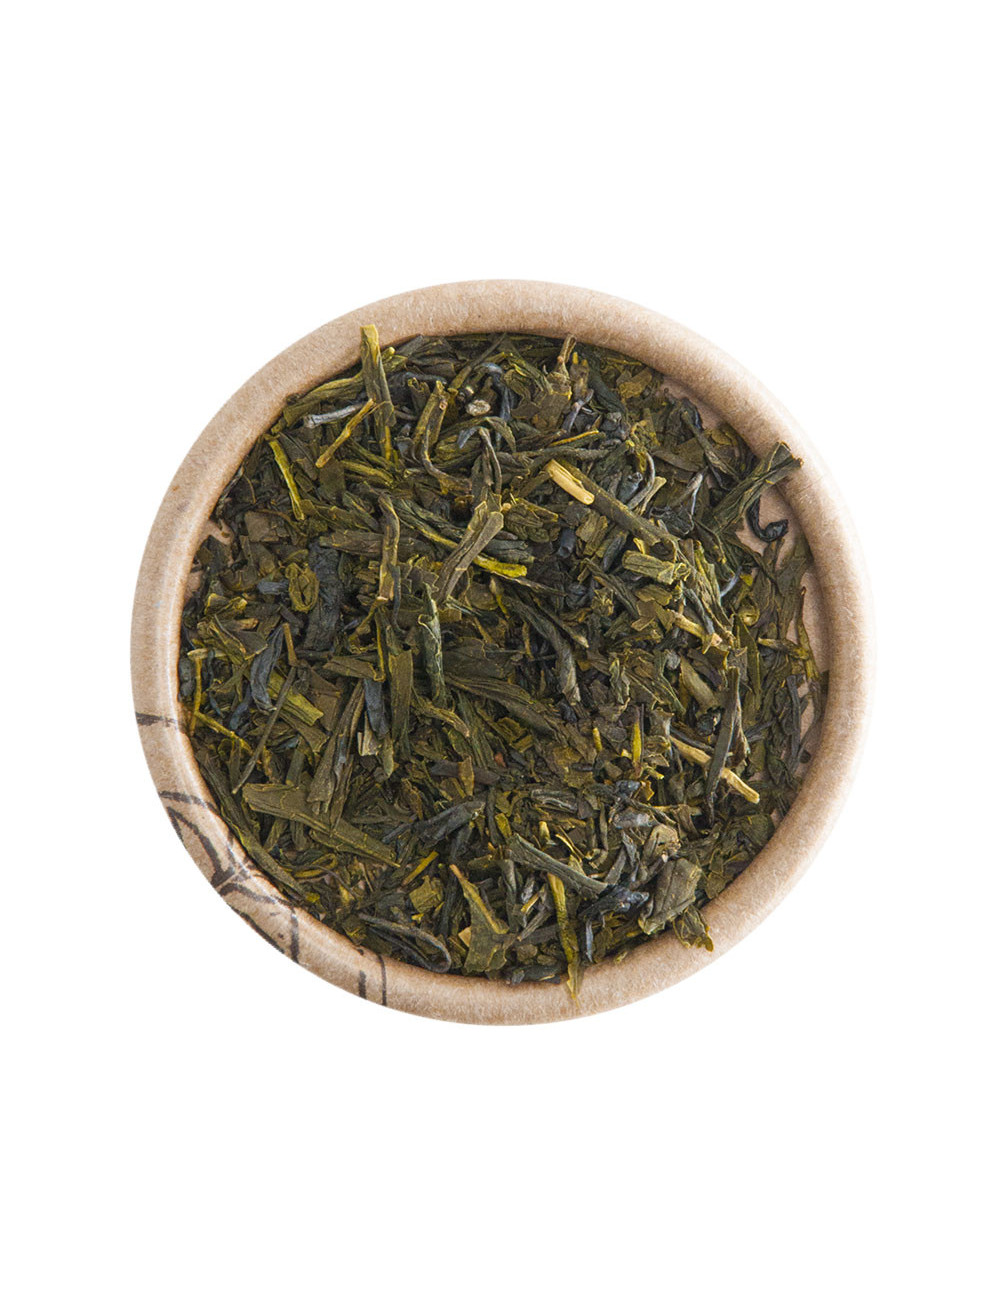 Japan Sencha tè verde - La Pianta del Tè shop online